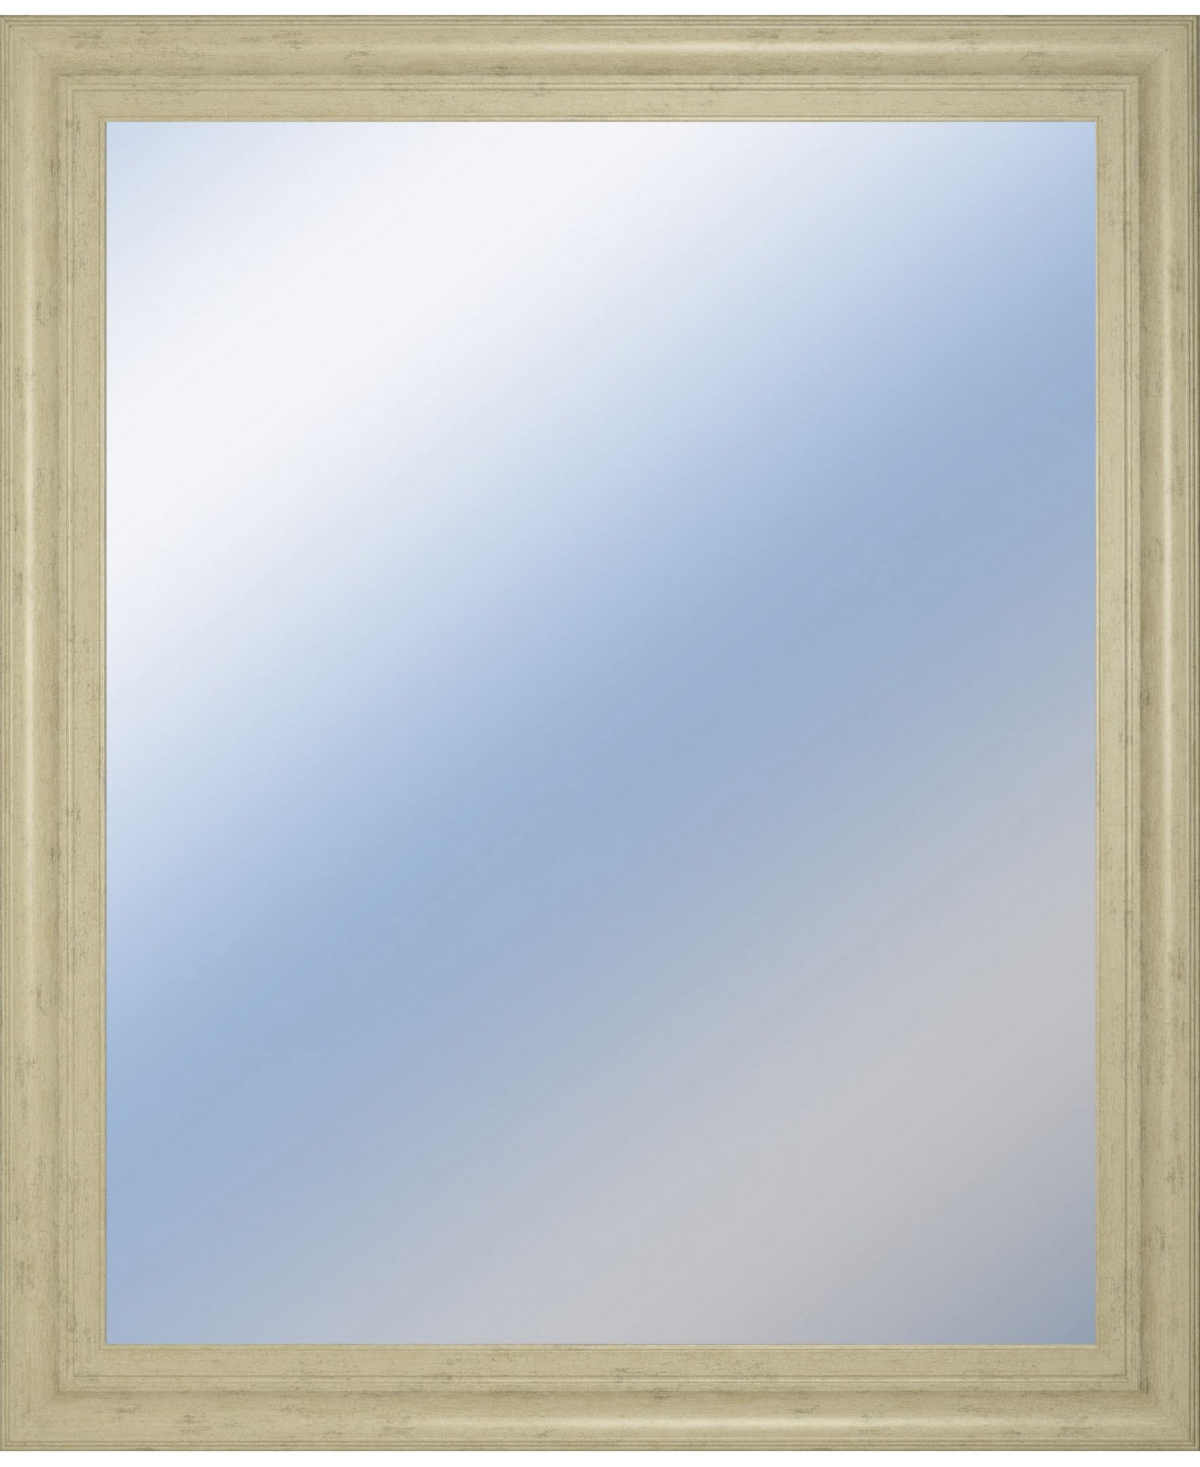 Decorative Framed Wall Mirror, 34" x 40" - Silver